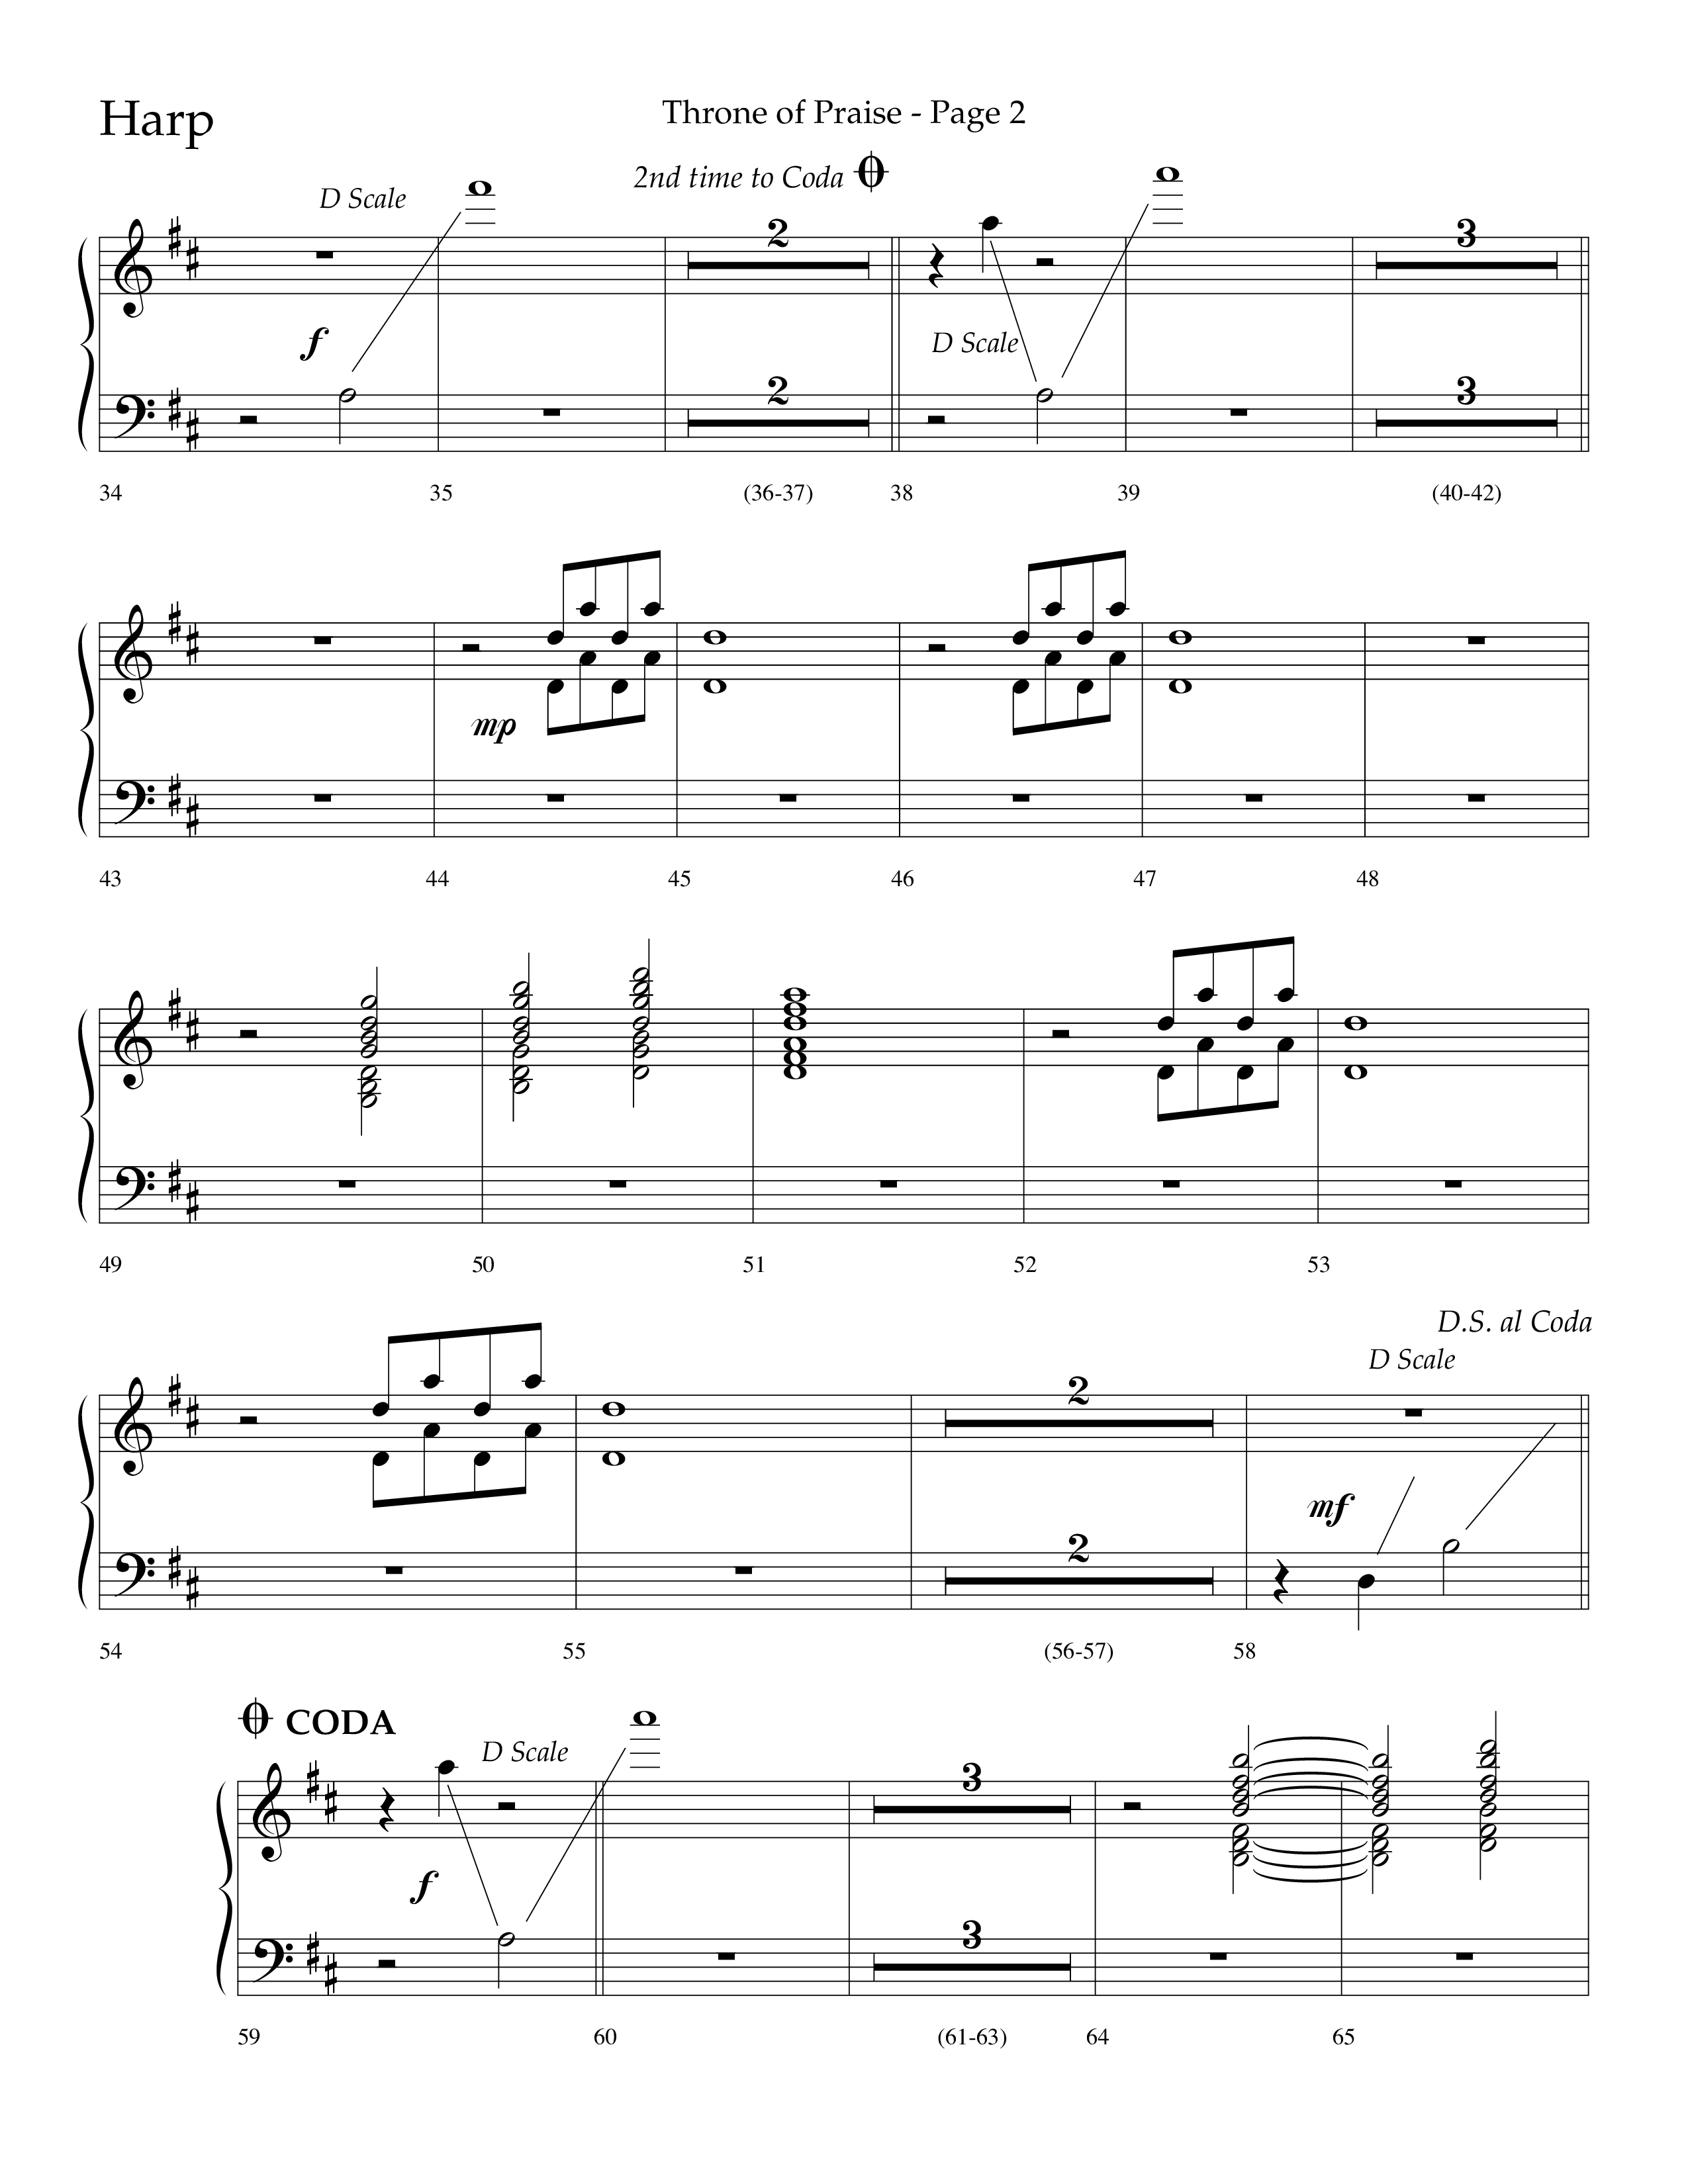 Throne Of Praise (Choral Anthem SATB) Harp (Lifeway Choral / Arr. J. Daniel Smith)